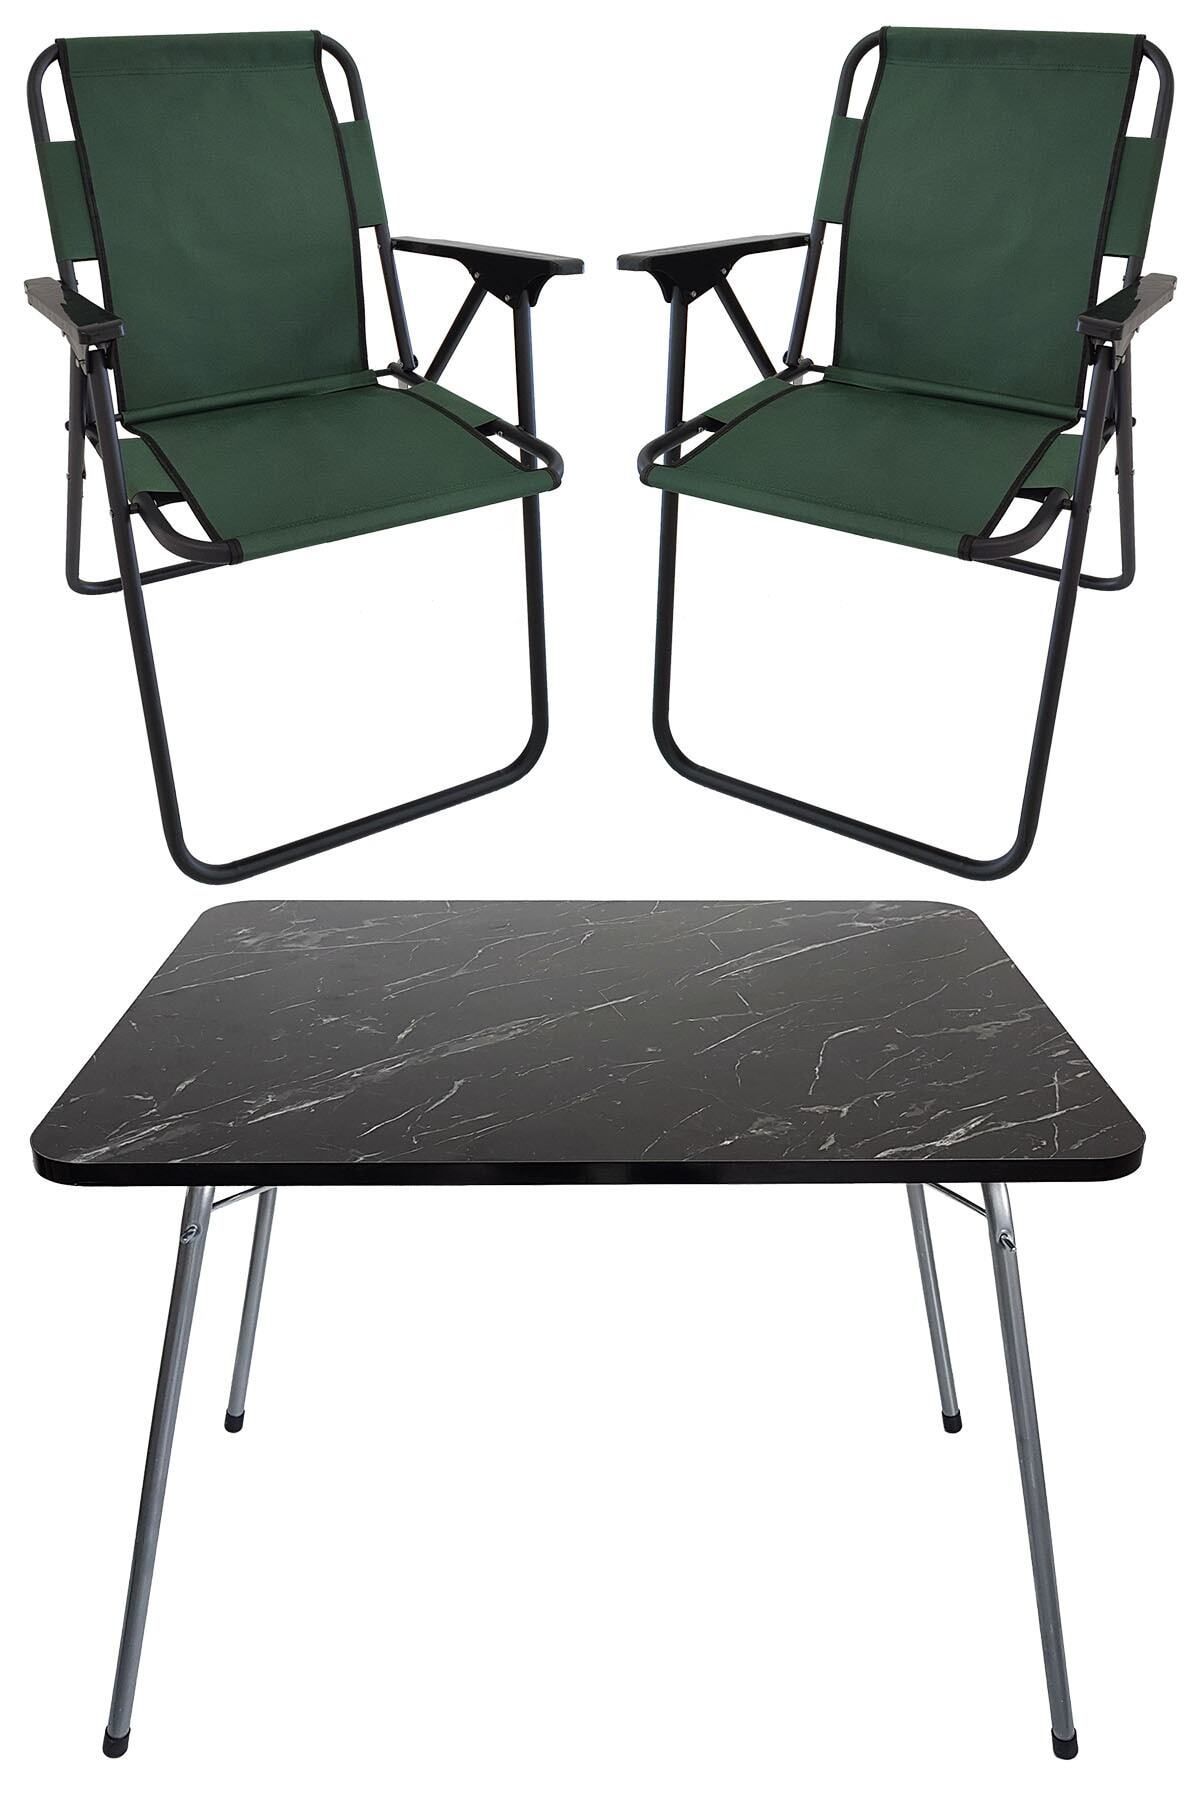 Bofigo 60x80 Granit Desenli Katlanır Masa + 2 Adet Katlanır Sandalye Kamp Seti Bahçe Takımı Yeşil